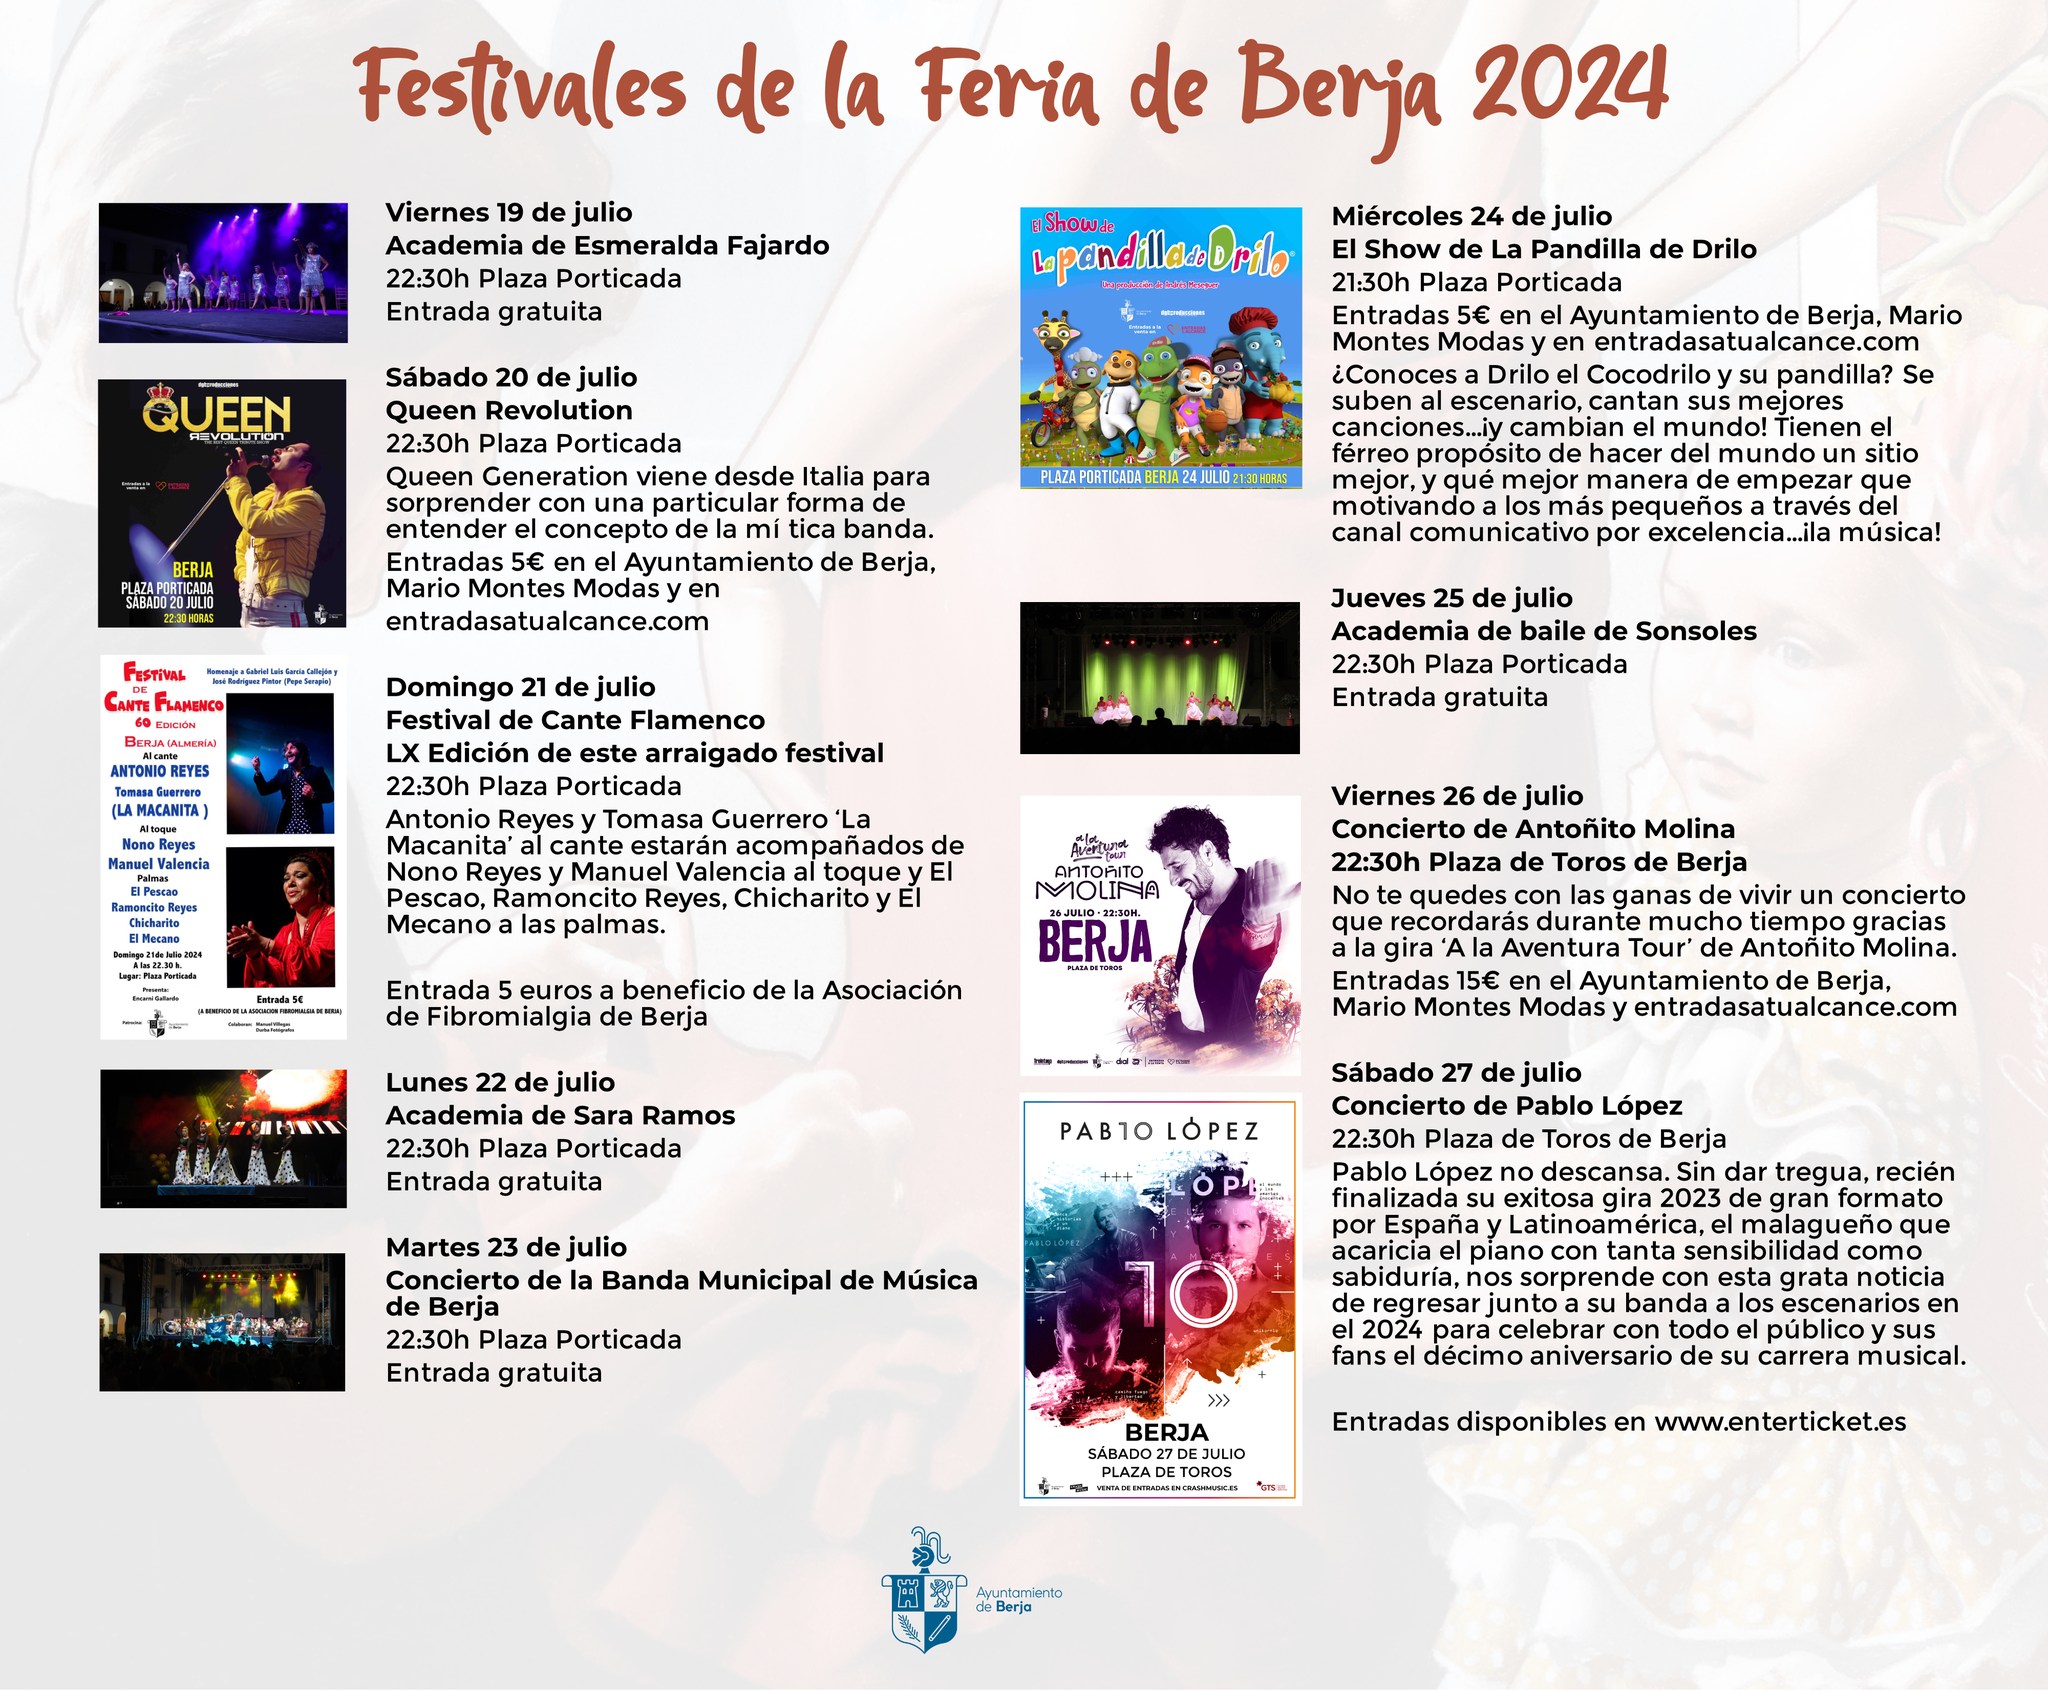 Festivales de la Feria de Berja 2024